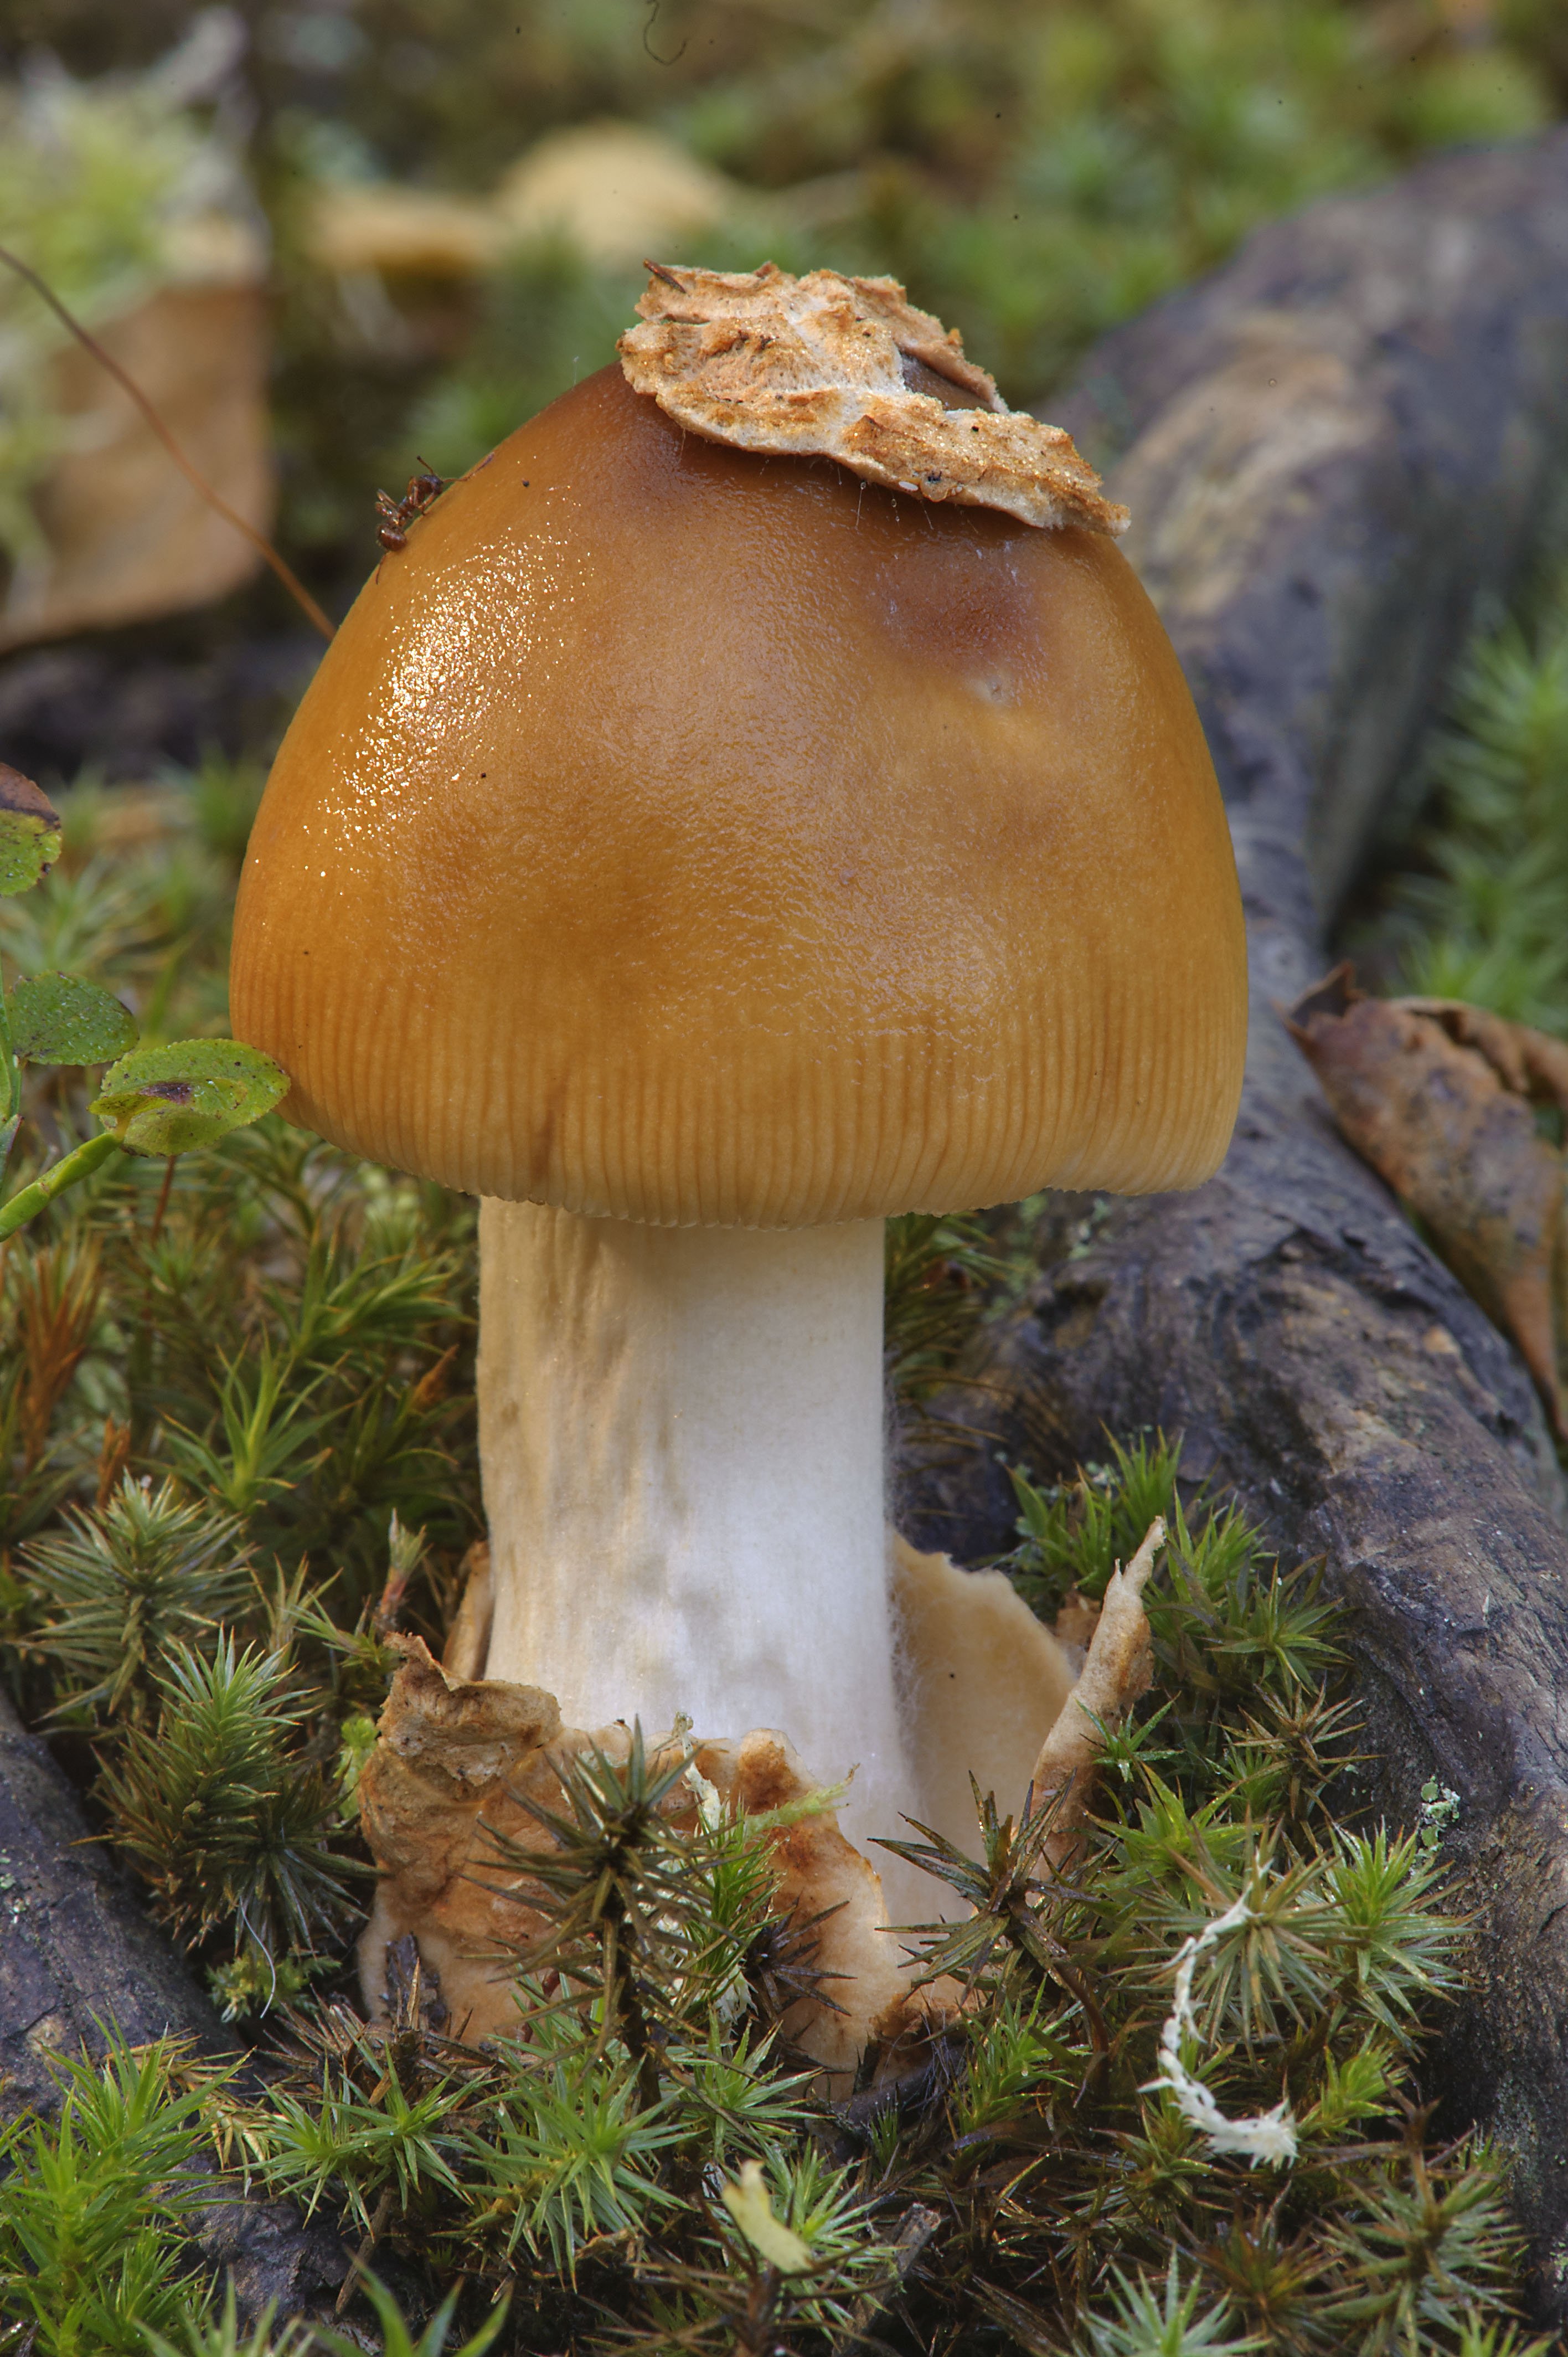 съедобные грибы ивановской области фото